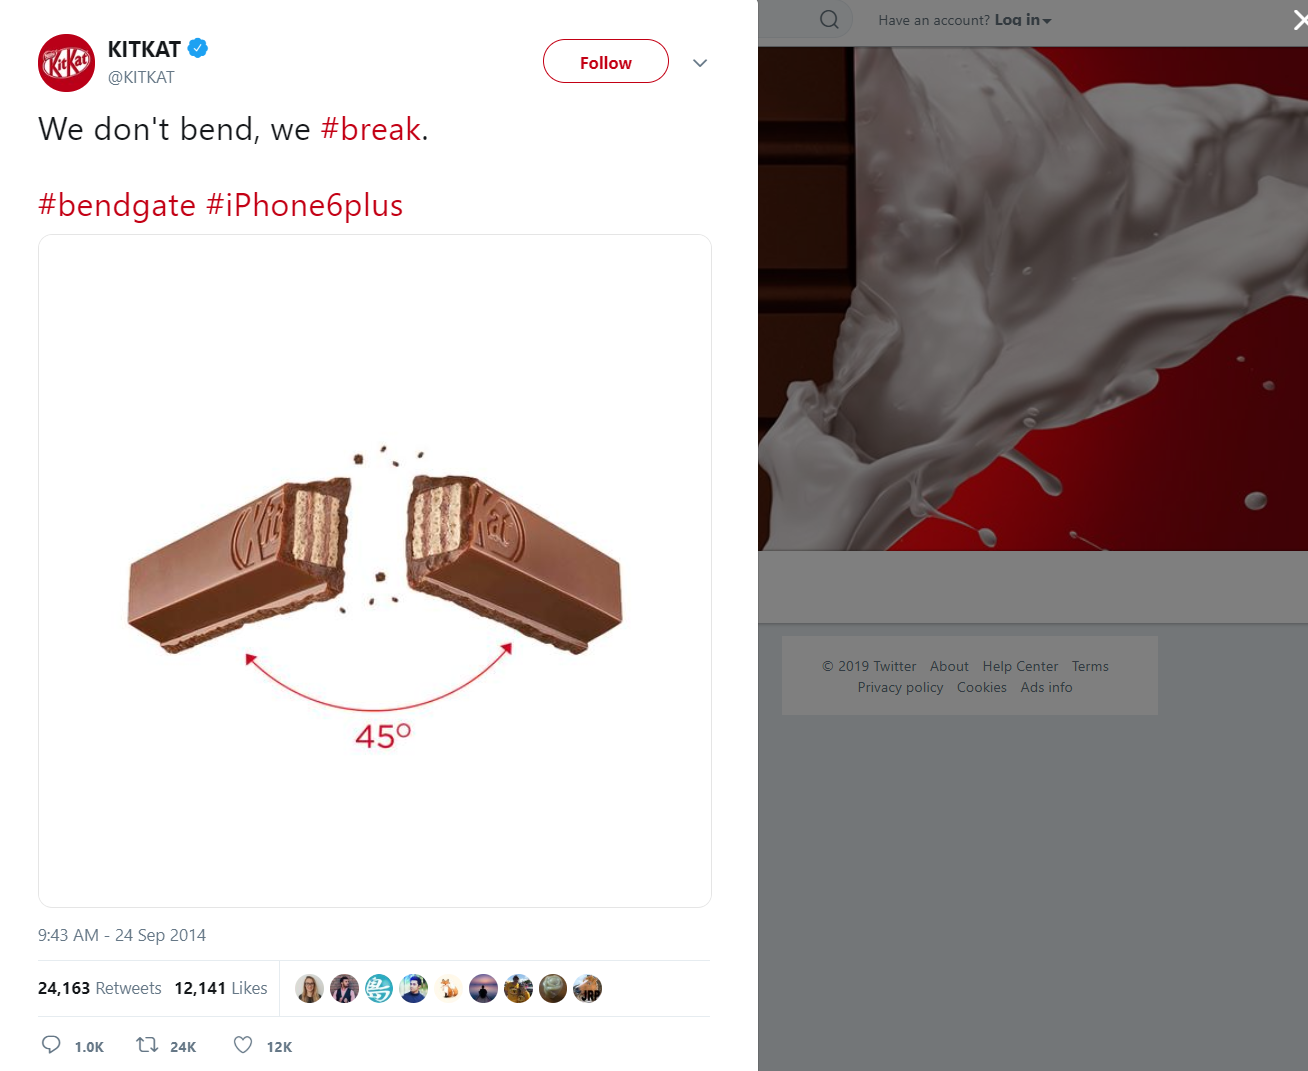 Twitter Marketing - Success Story: KitKat’s #bendgate tweet